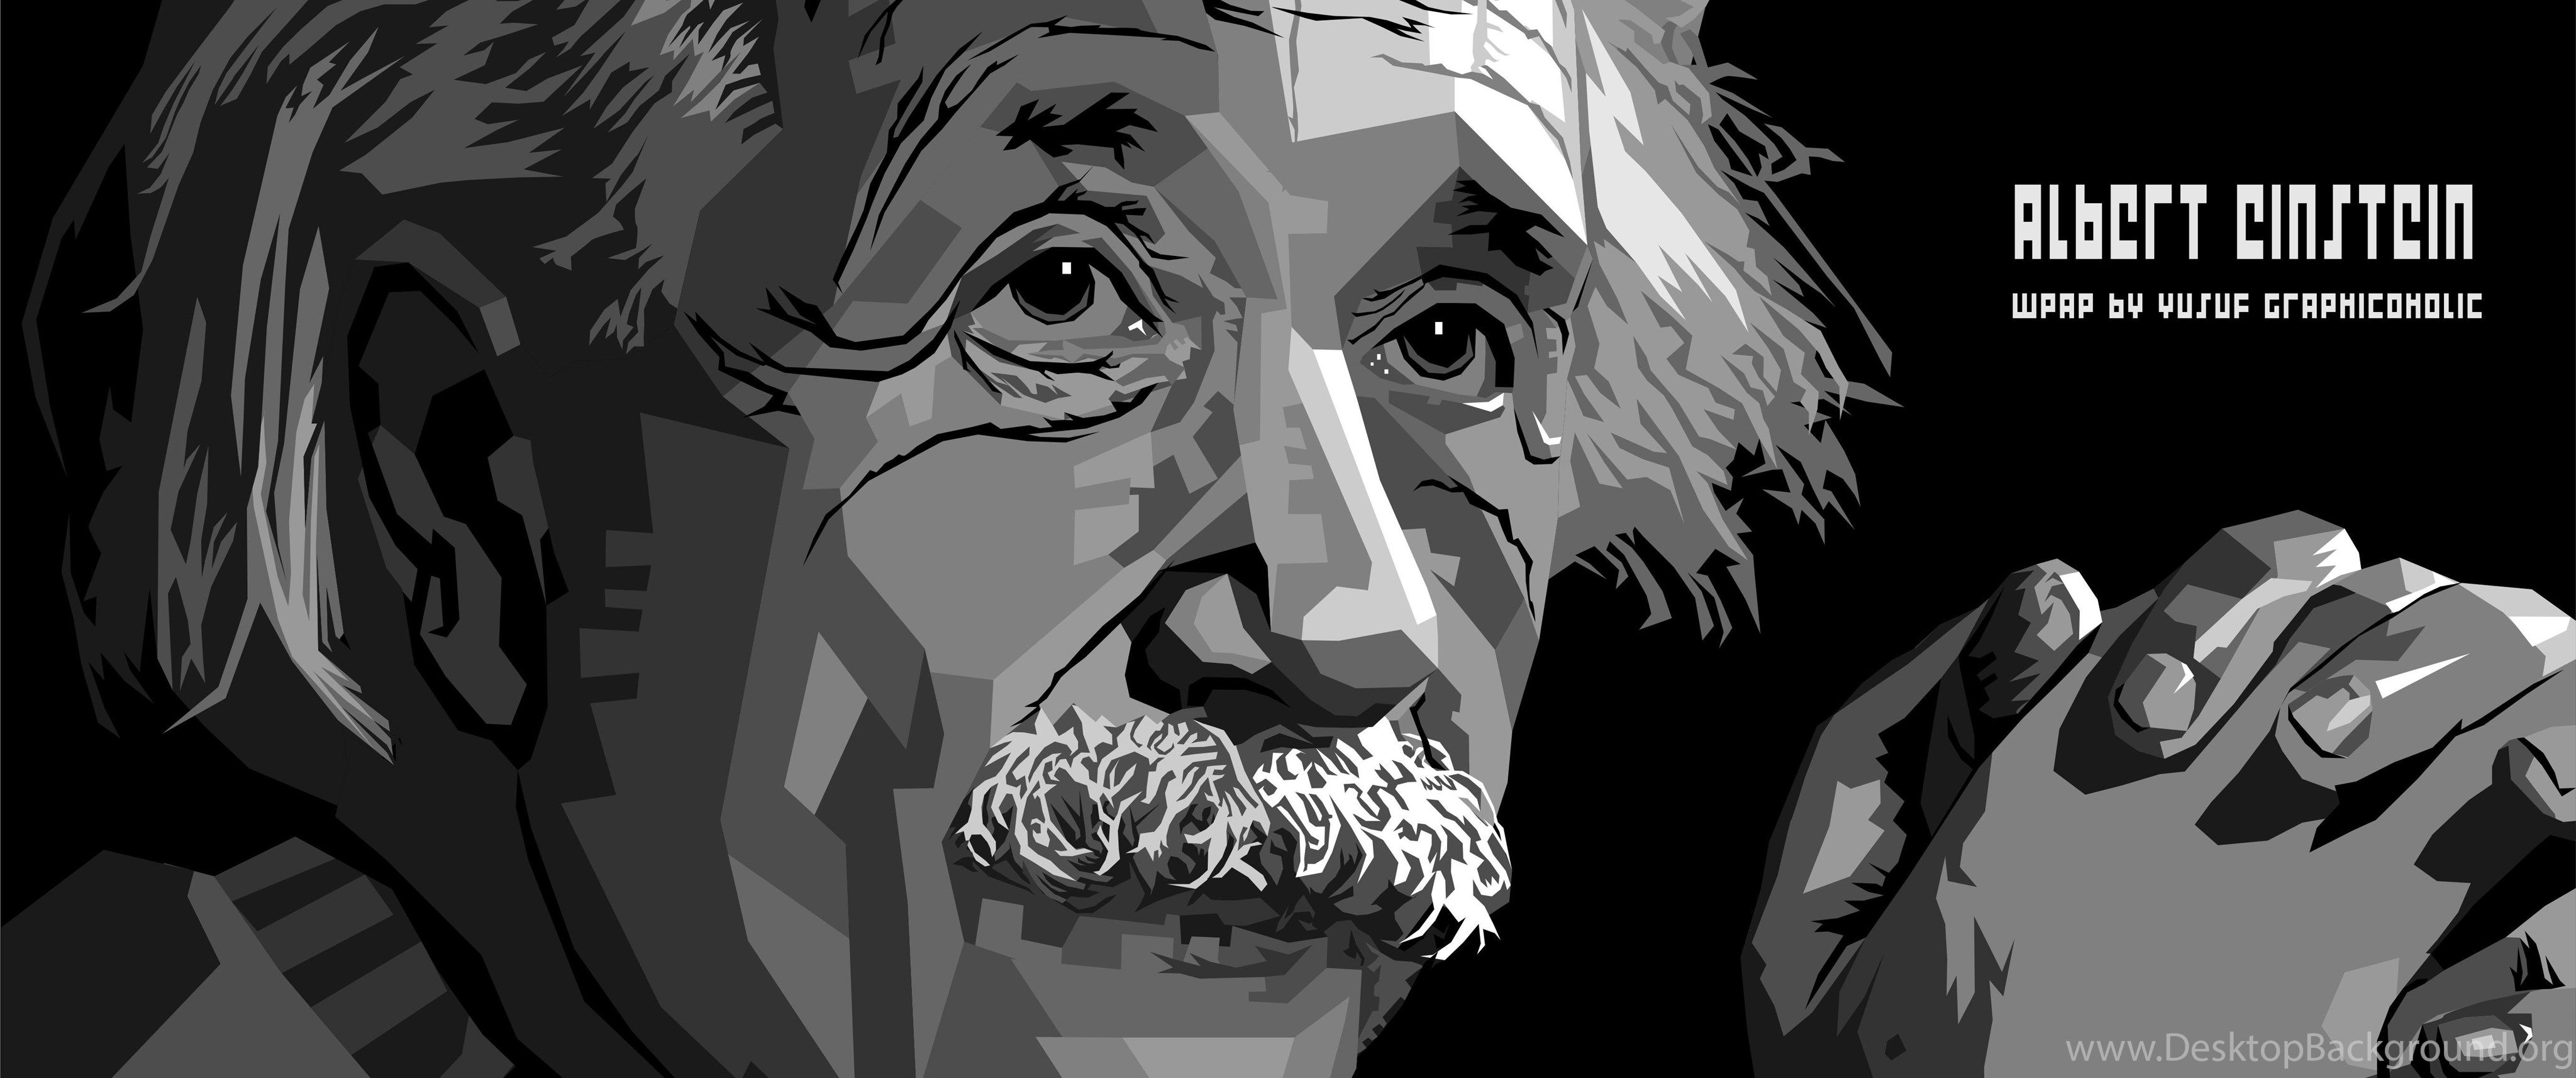 WPAP Einstein HD Wallpaper Desktop Background